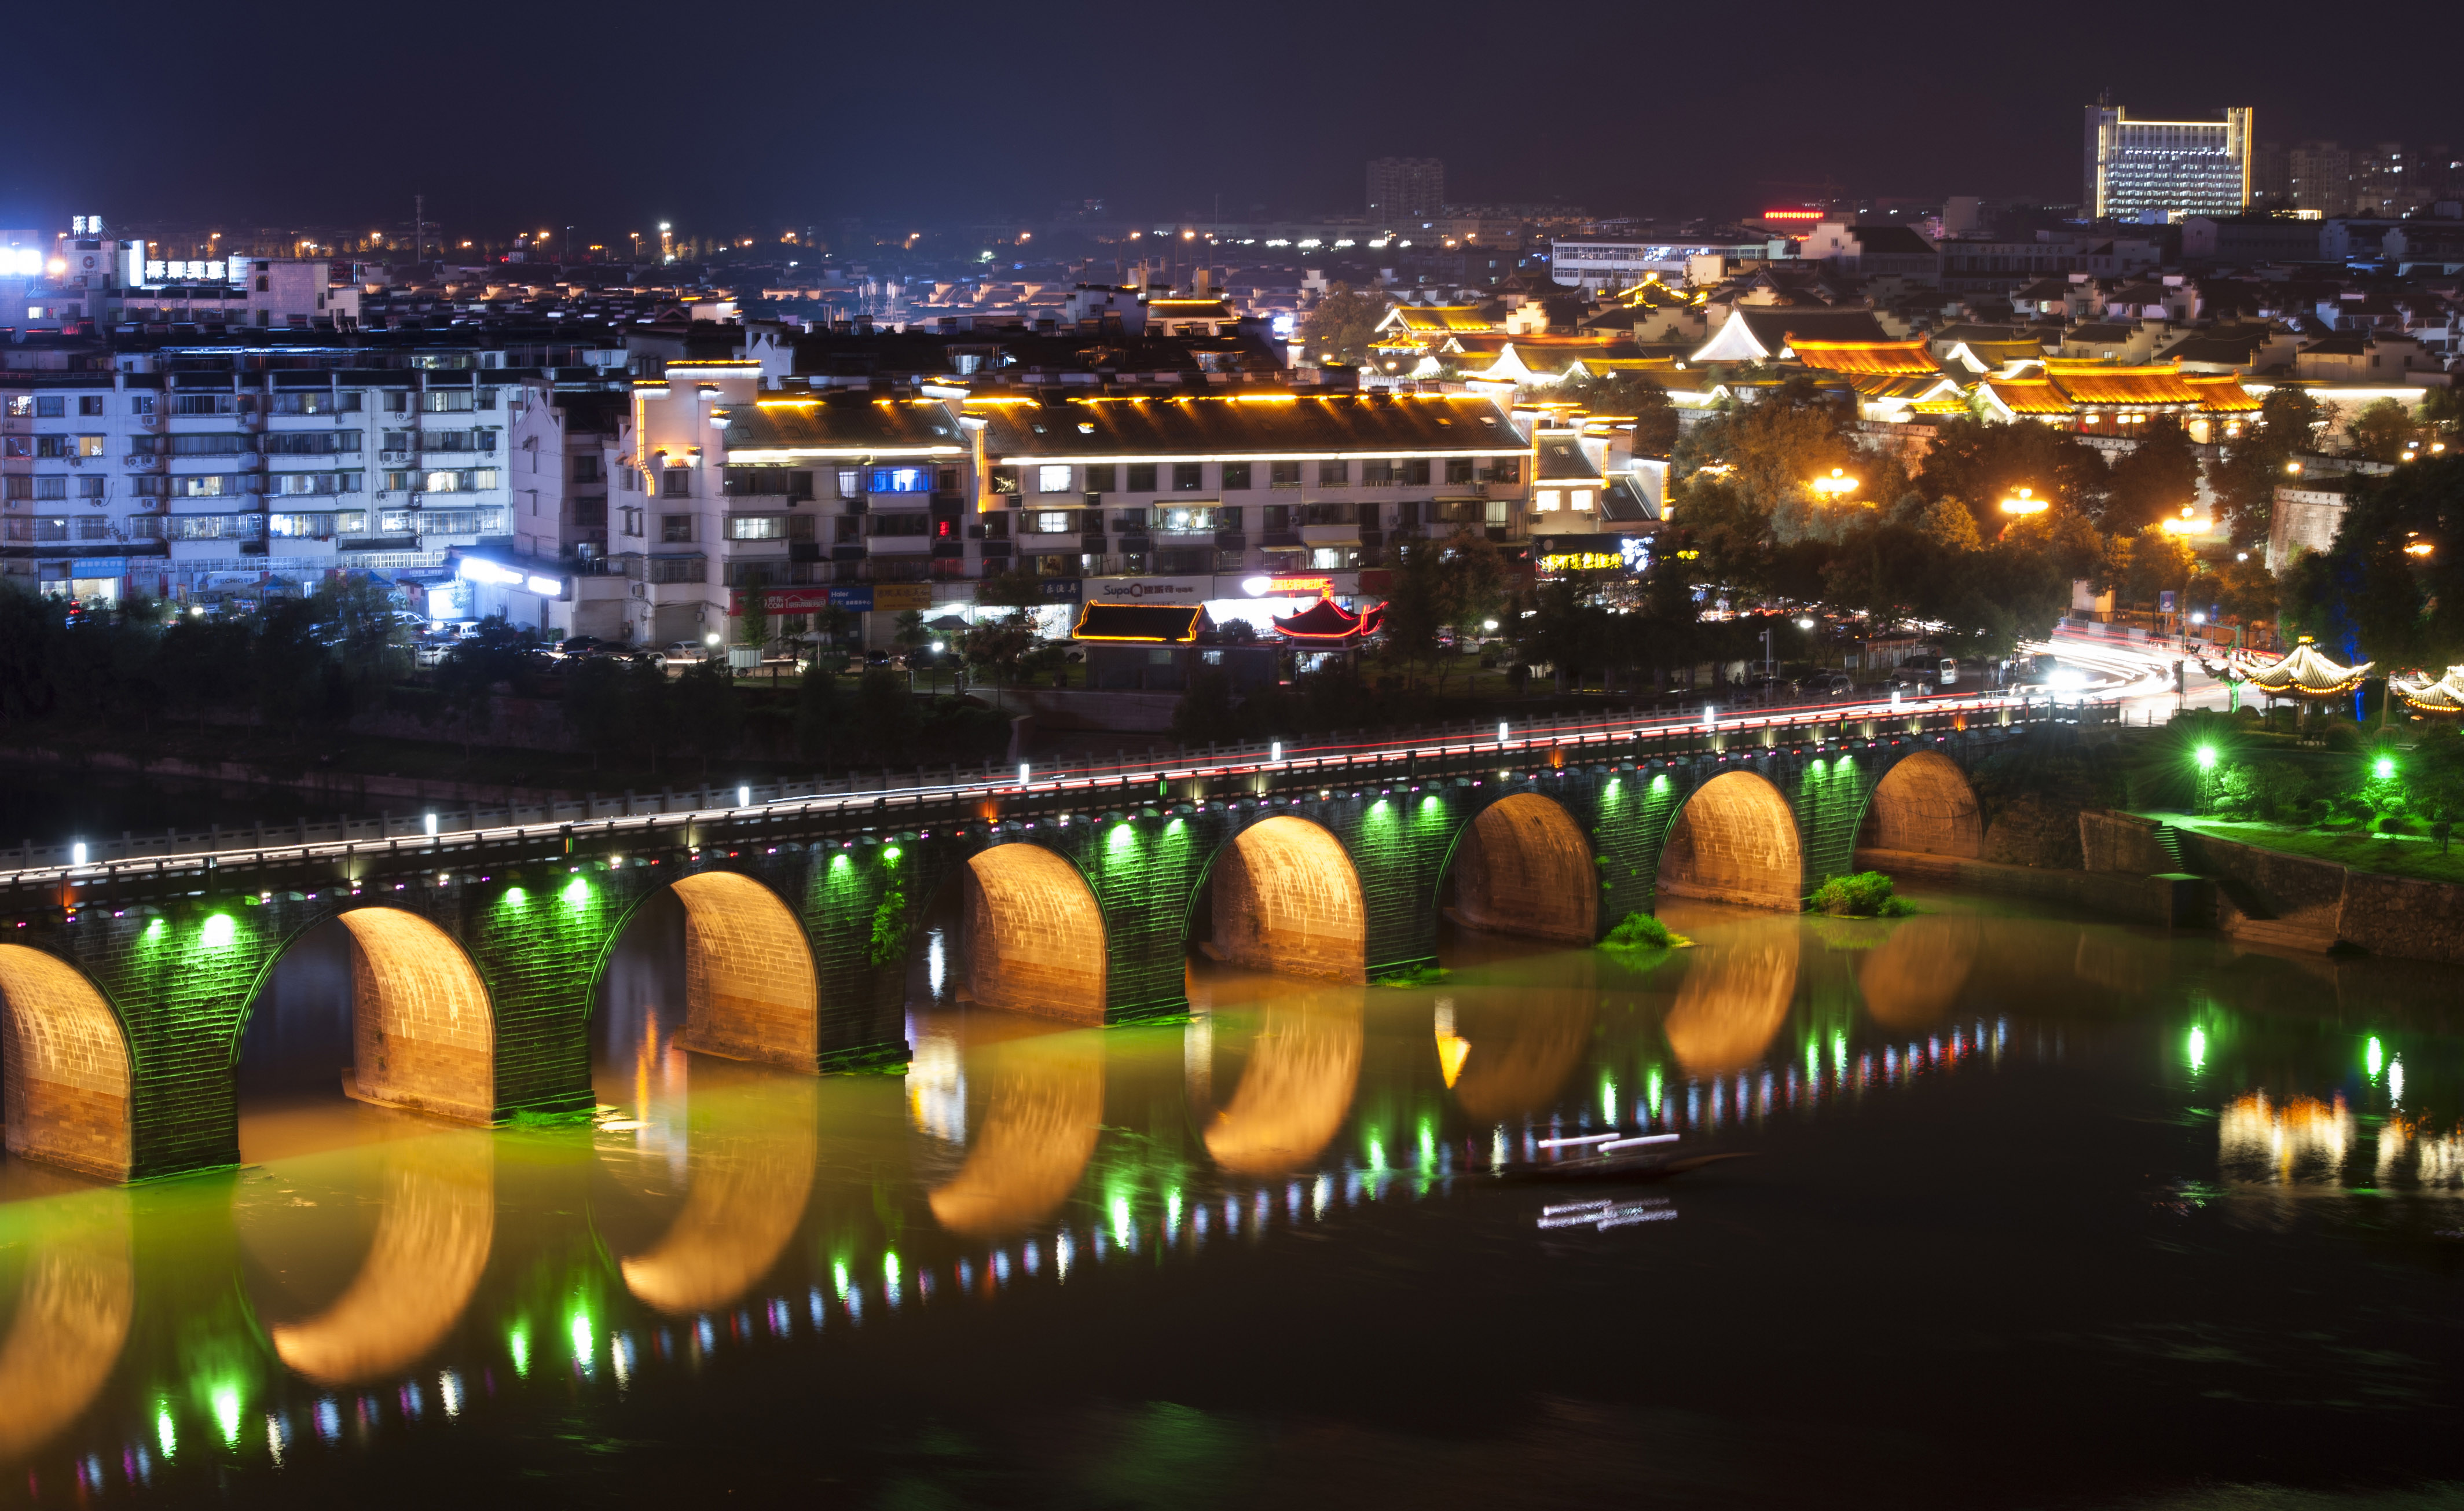 盘点2017年路过你的风景: 安徽歙县古城夜景